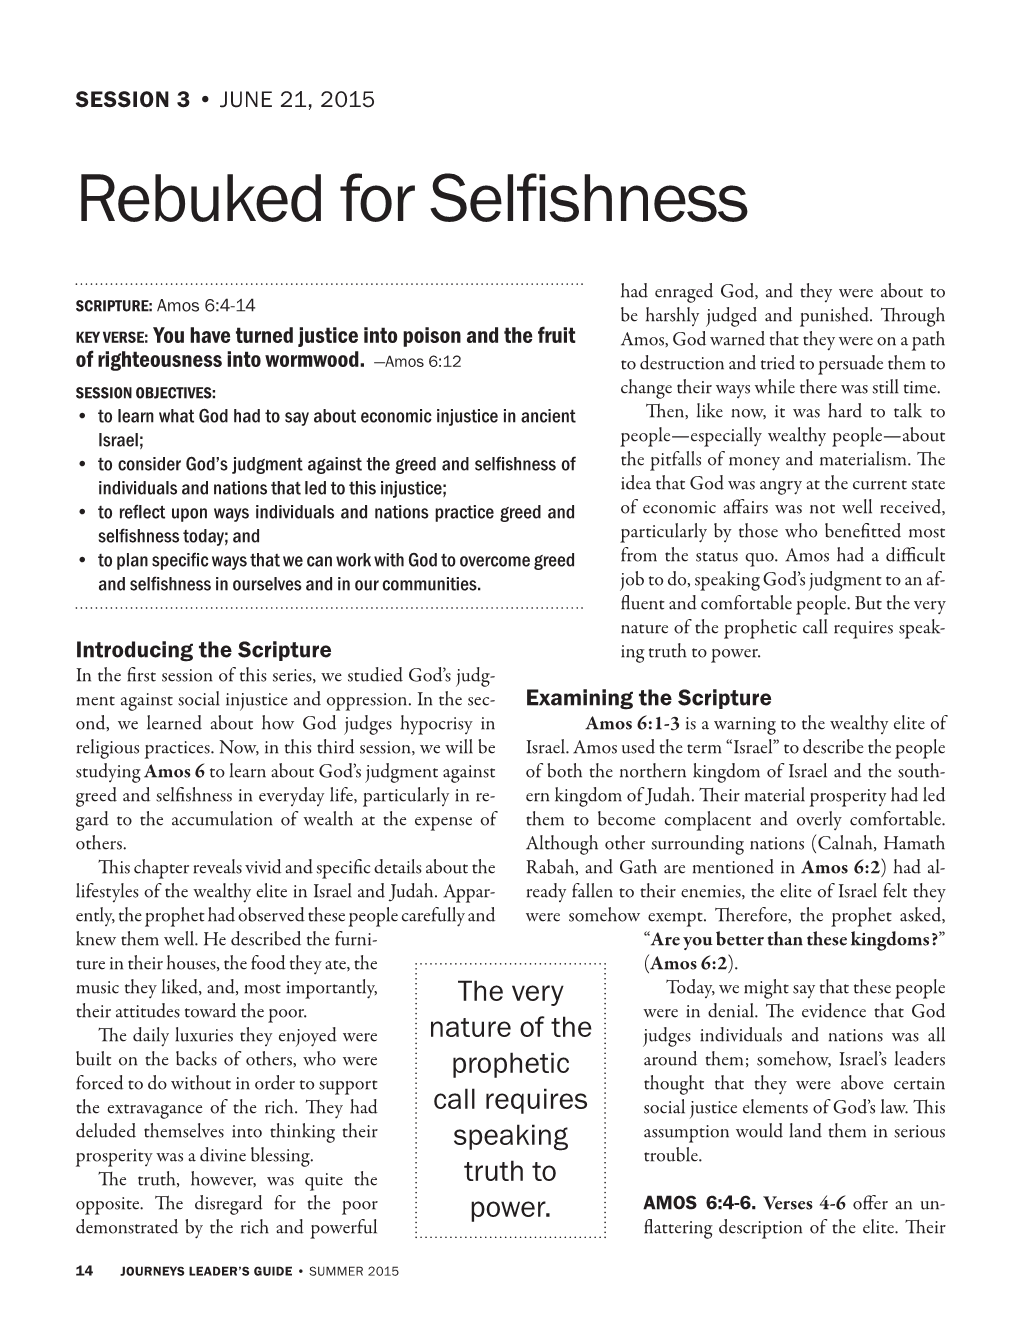 Rebuked for Selfishness